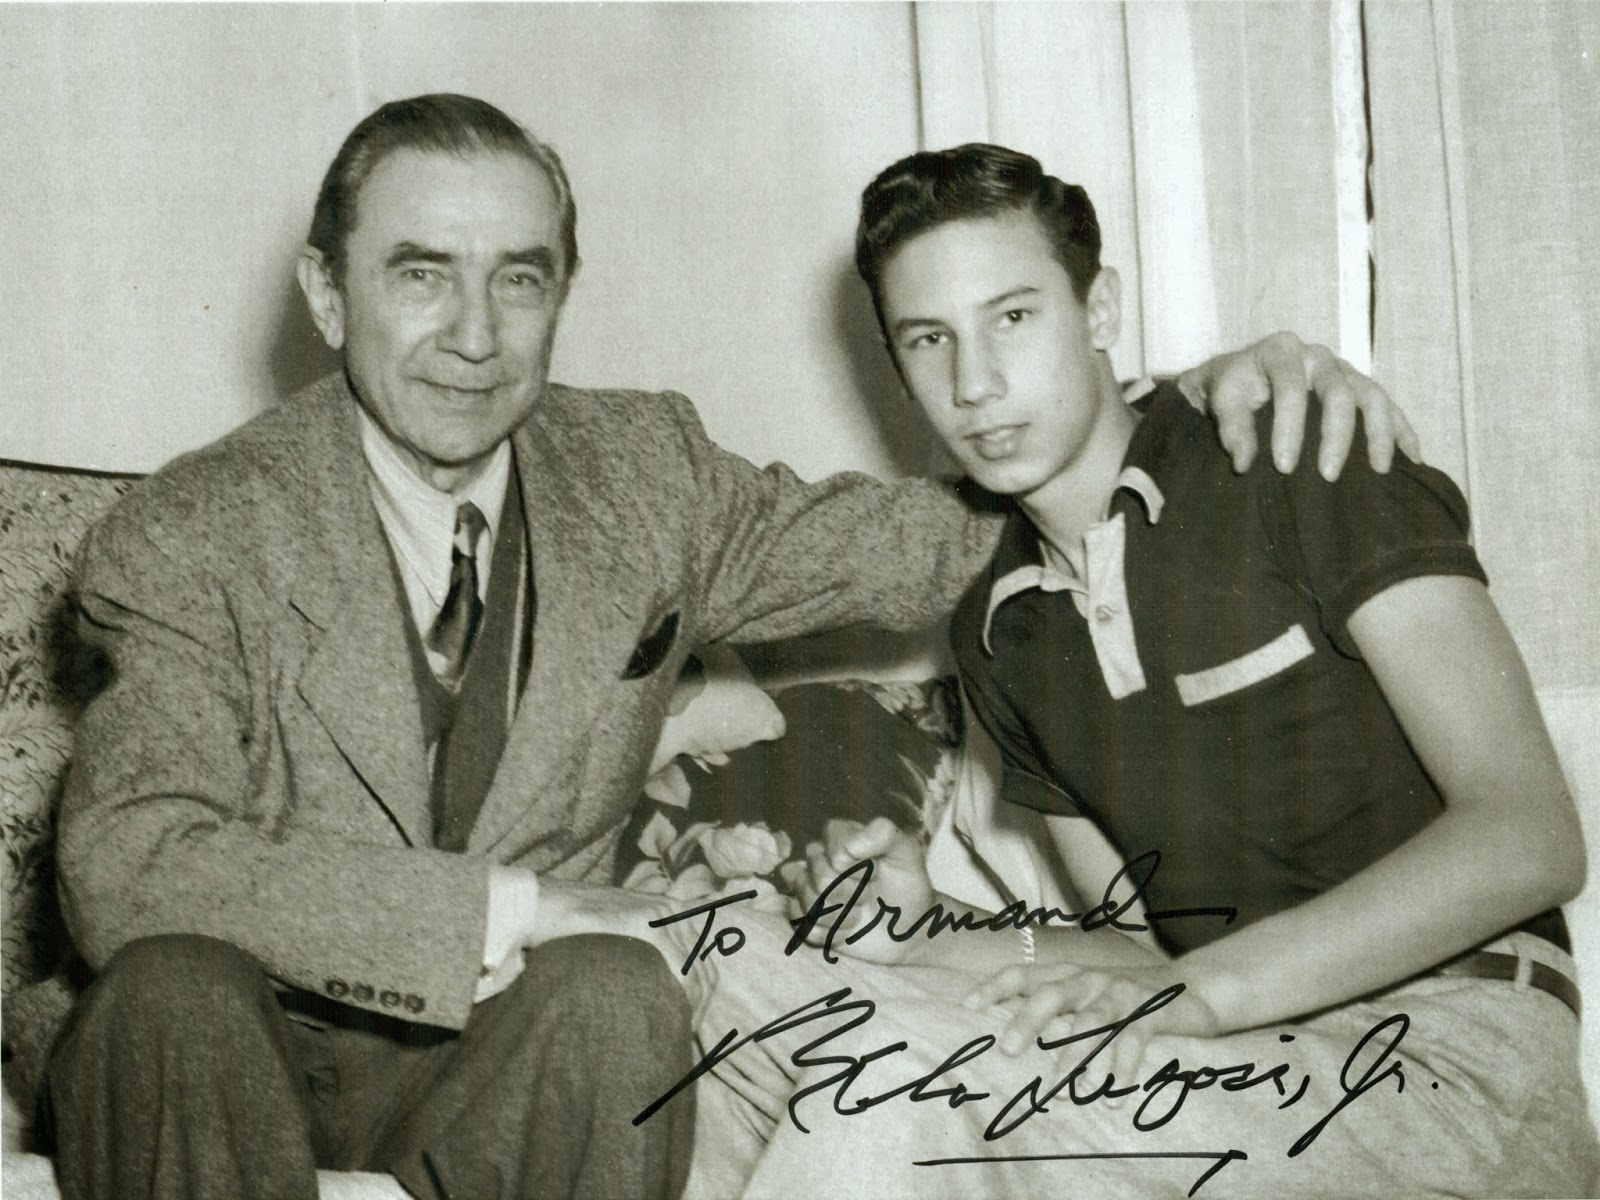 Lugosi & Lugosi jr.